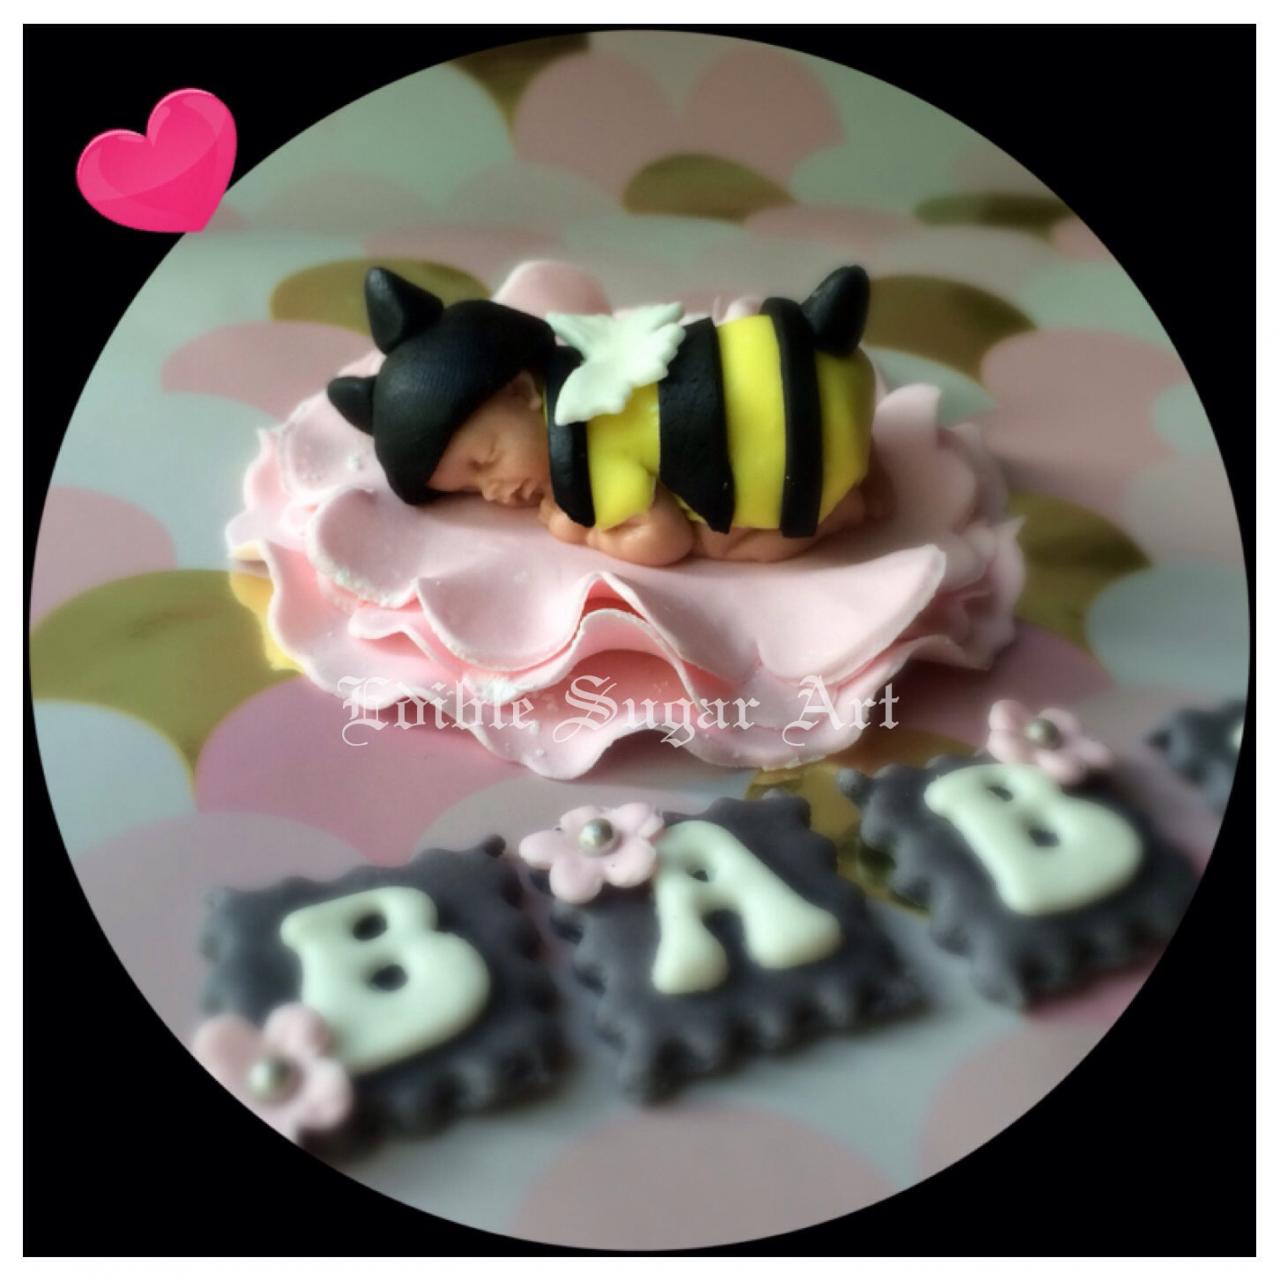 BEE BABY SHOWER Cake Topper Girl